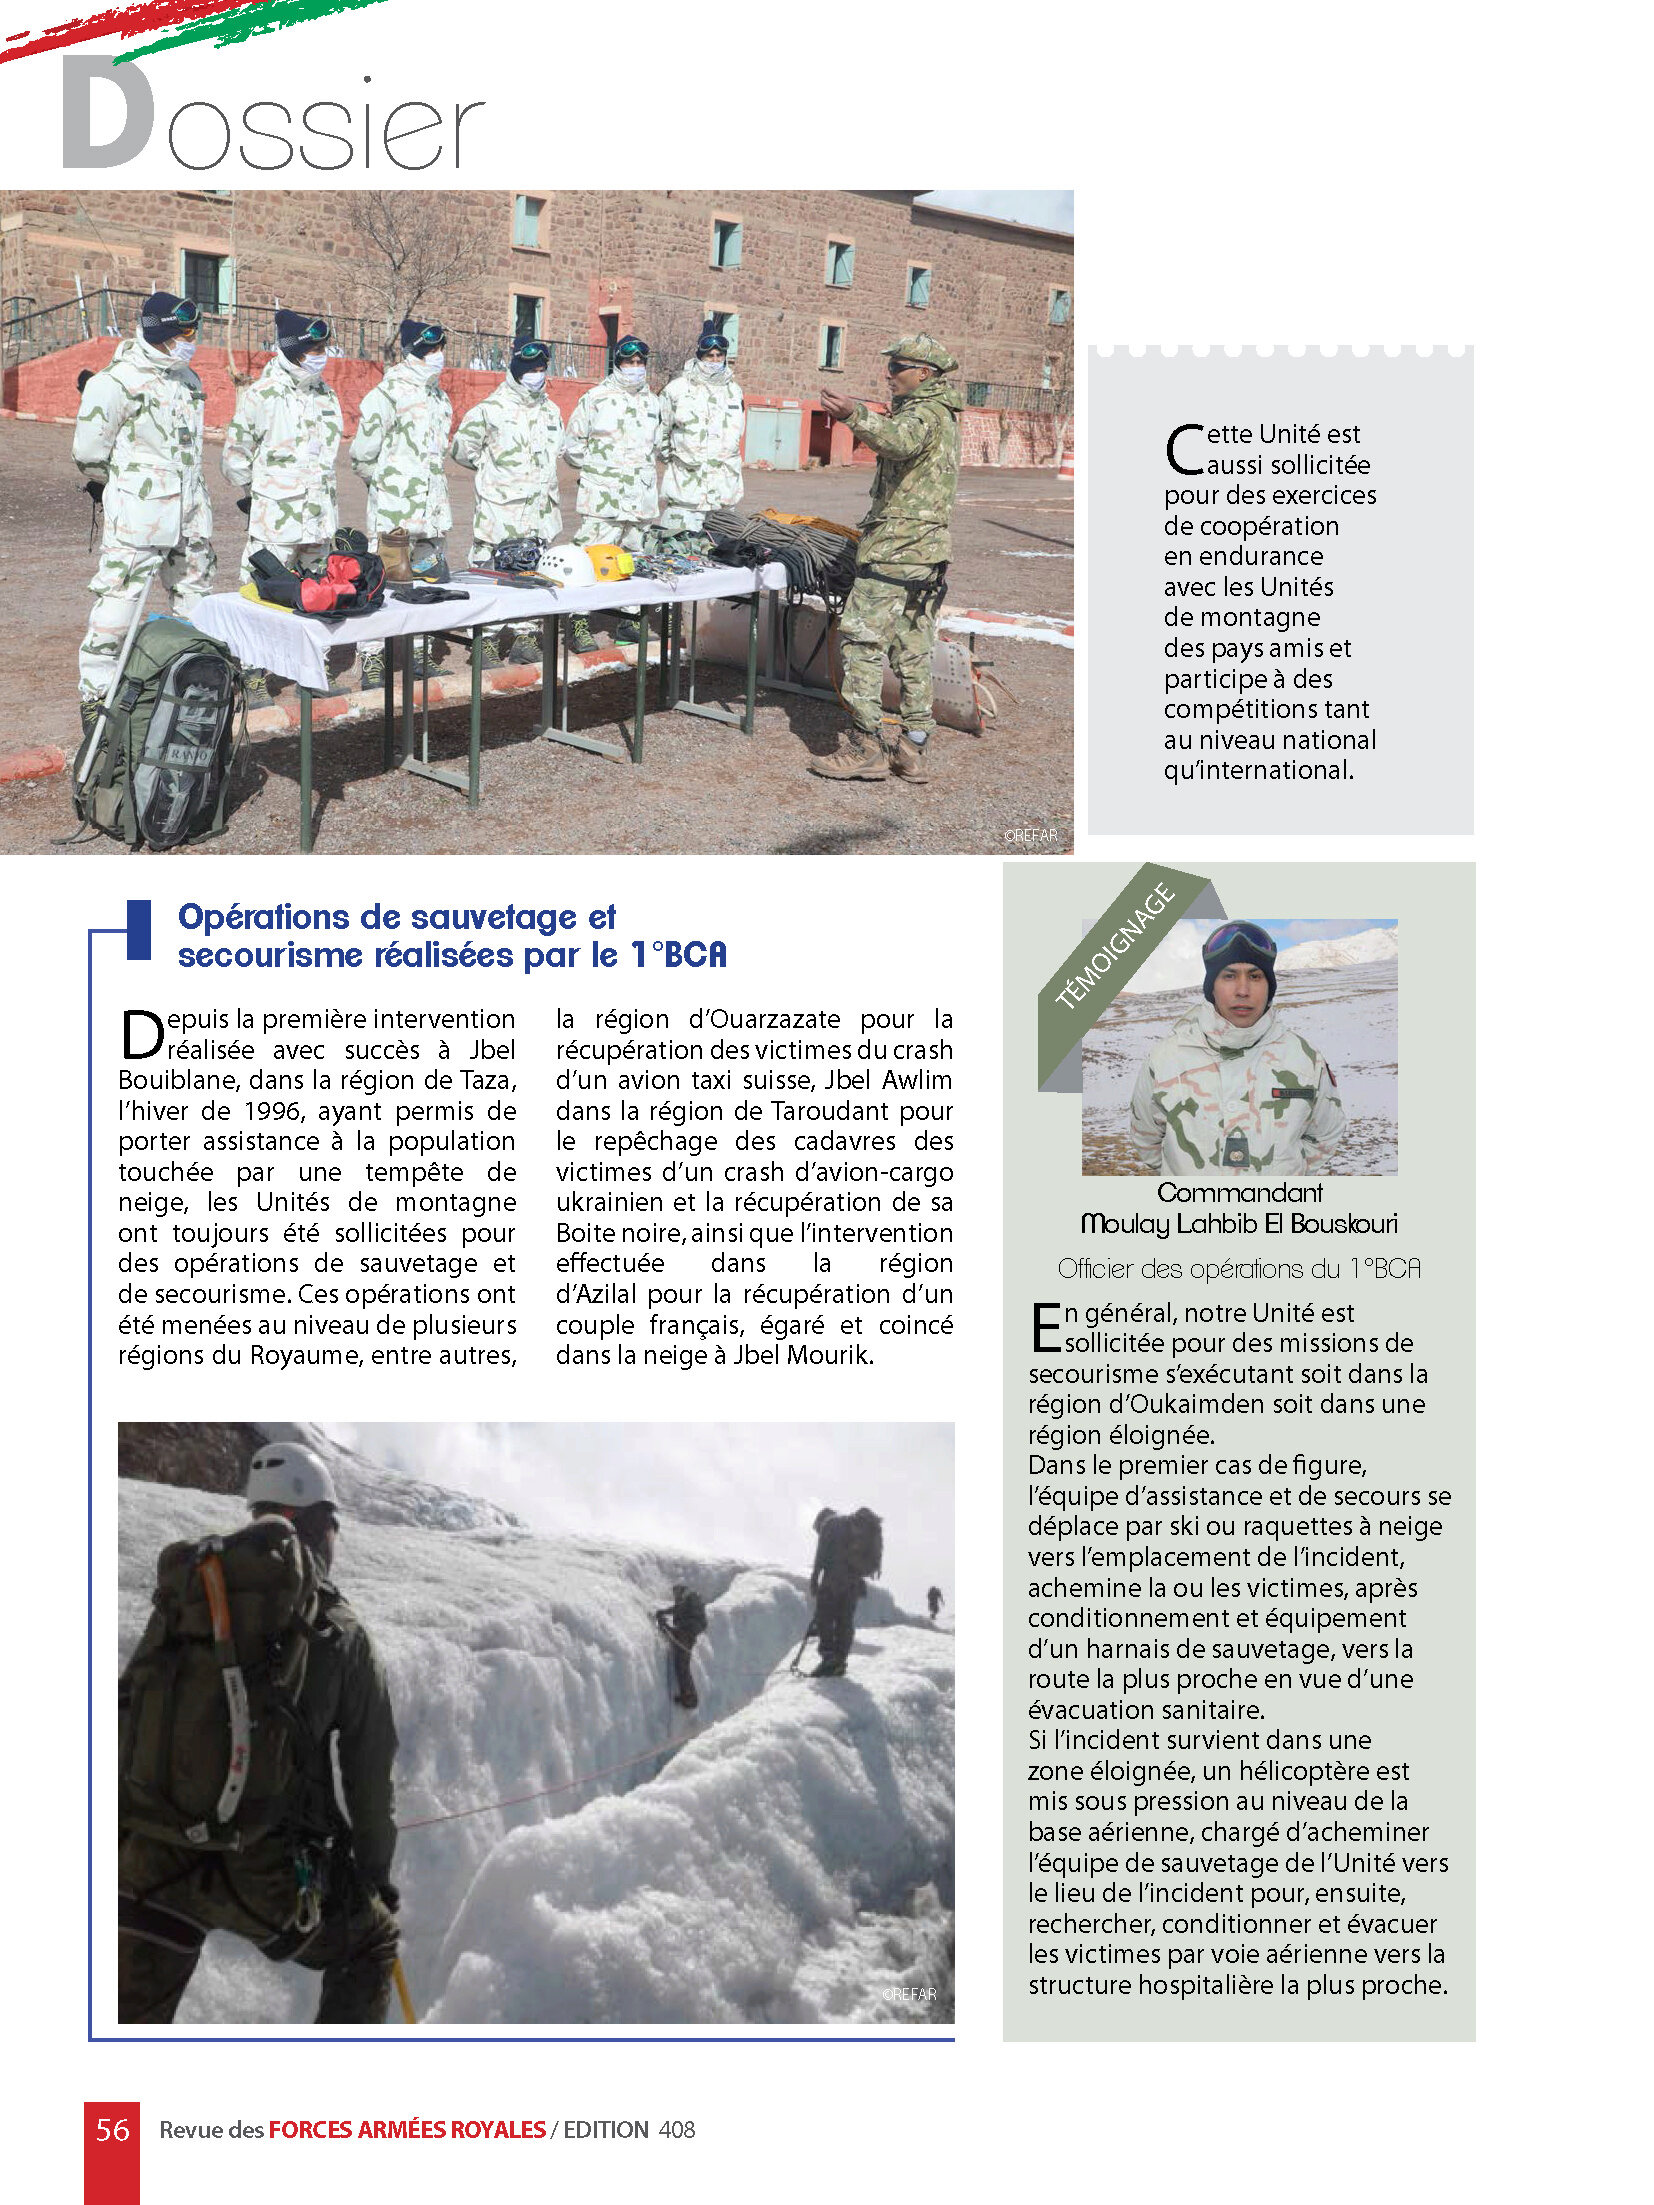 Le Bataillon de Skieurs / Moroccan Skiers Battalion - Page 2 Pages_38